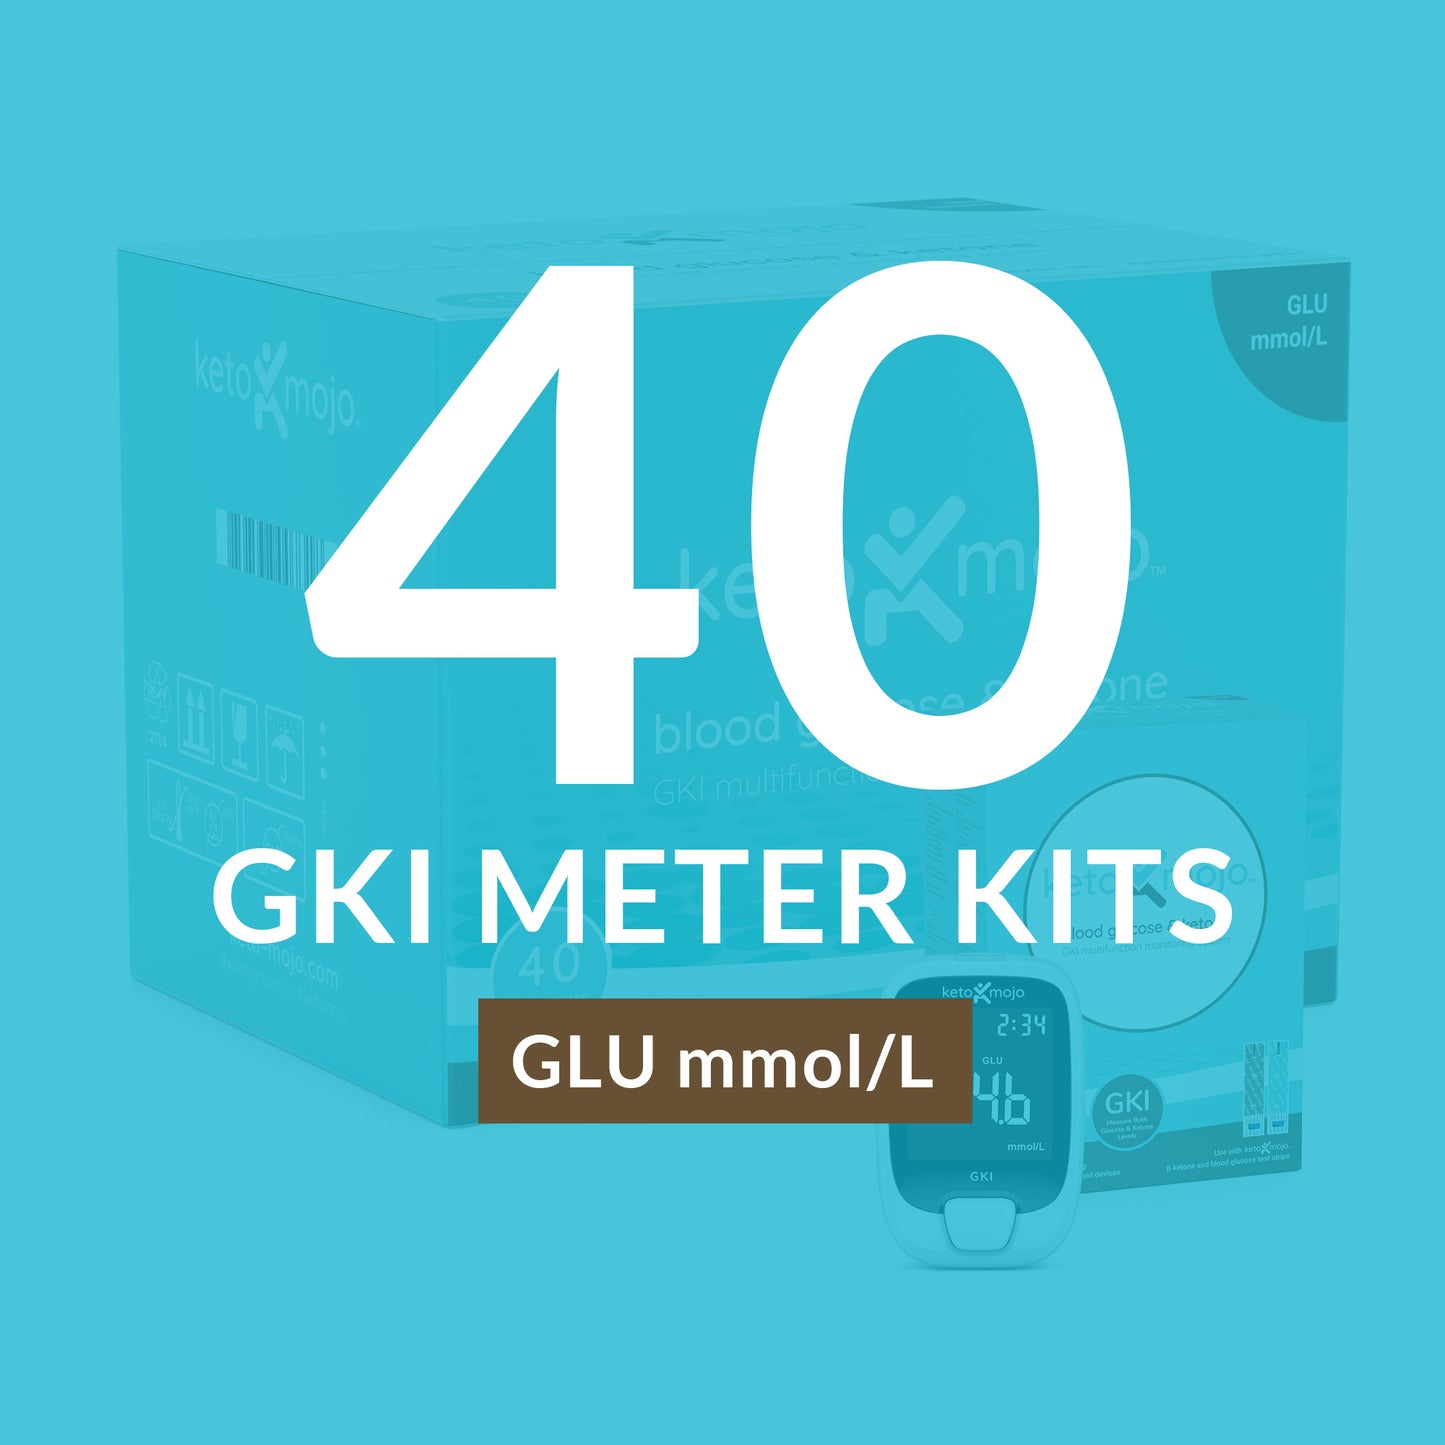 Mastercase GKI-Bluetooth Metre - BASIC STARTER KIT (40 paket) mg/dL